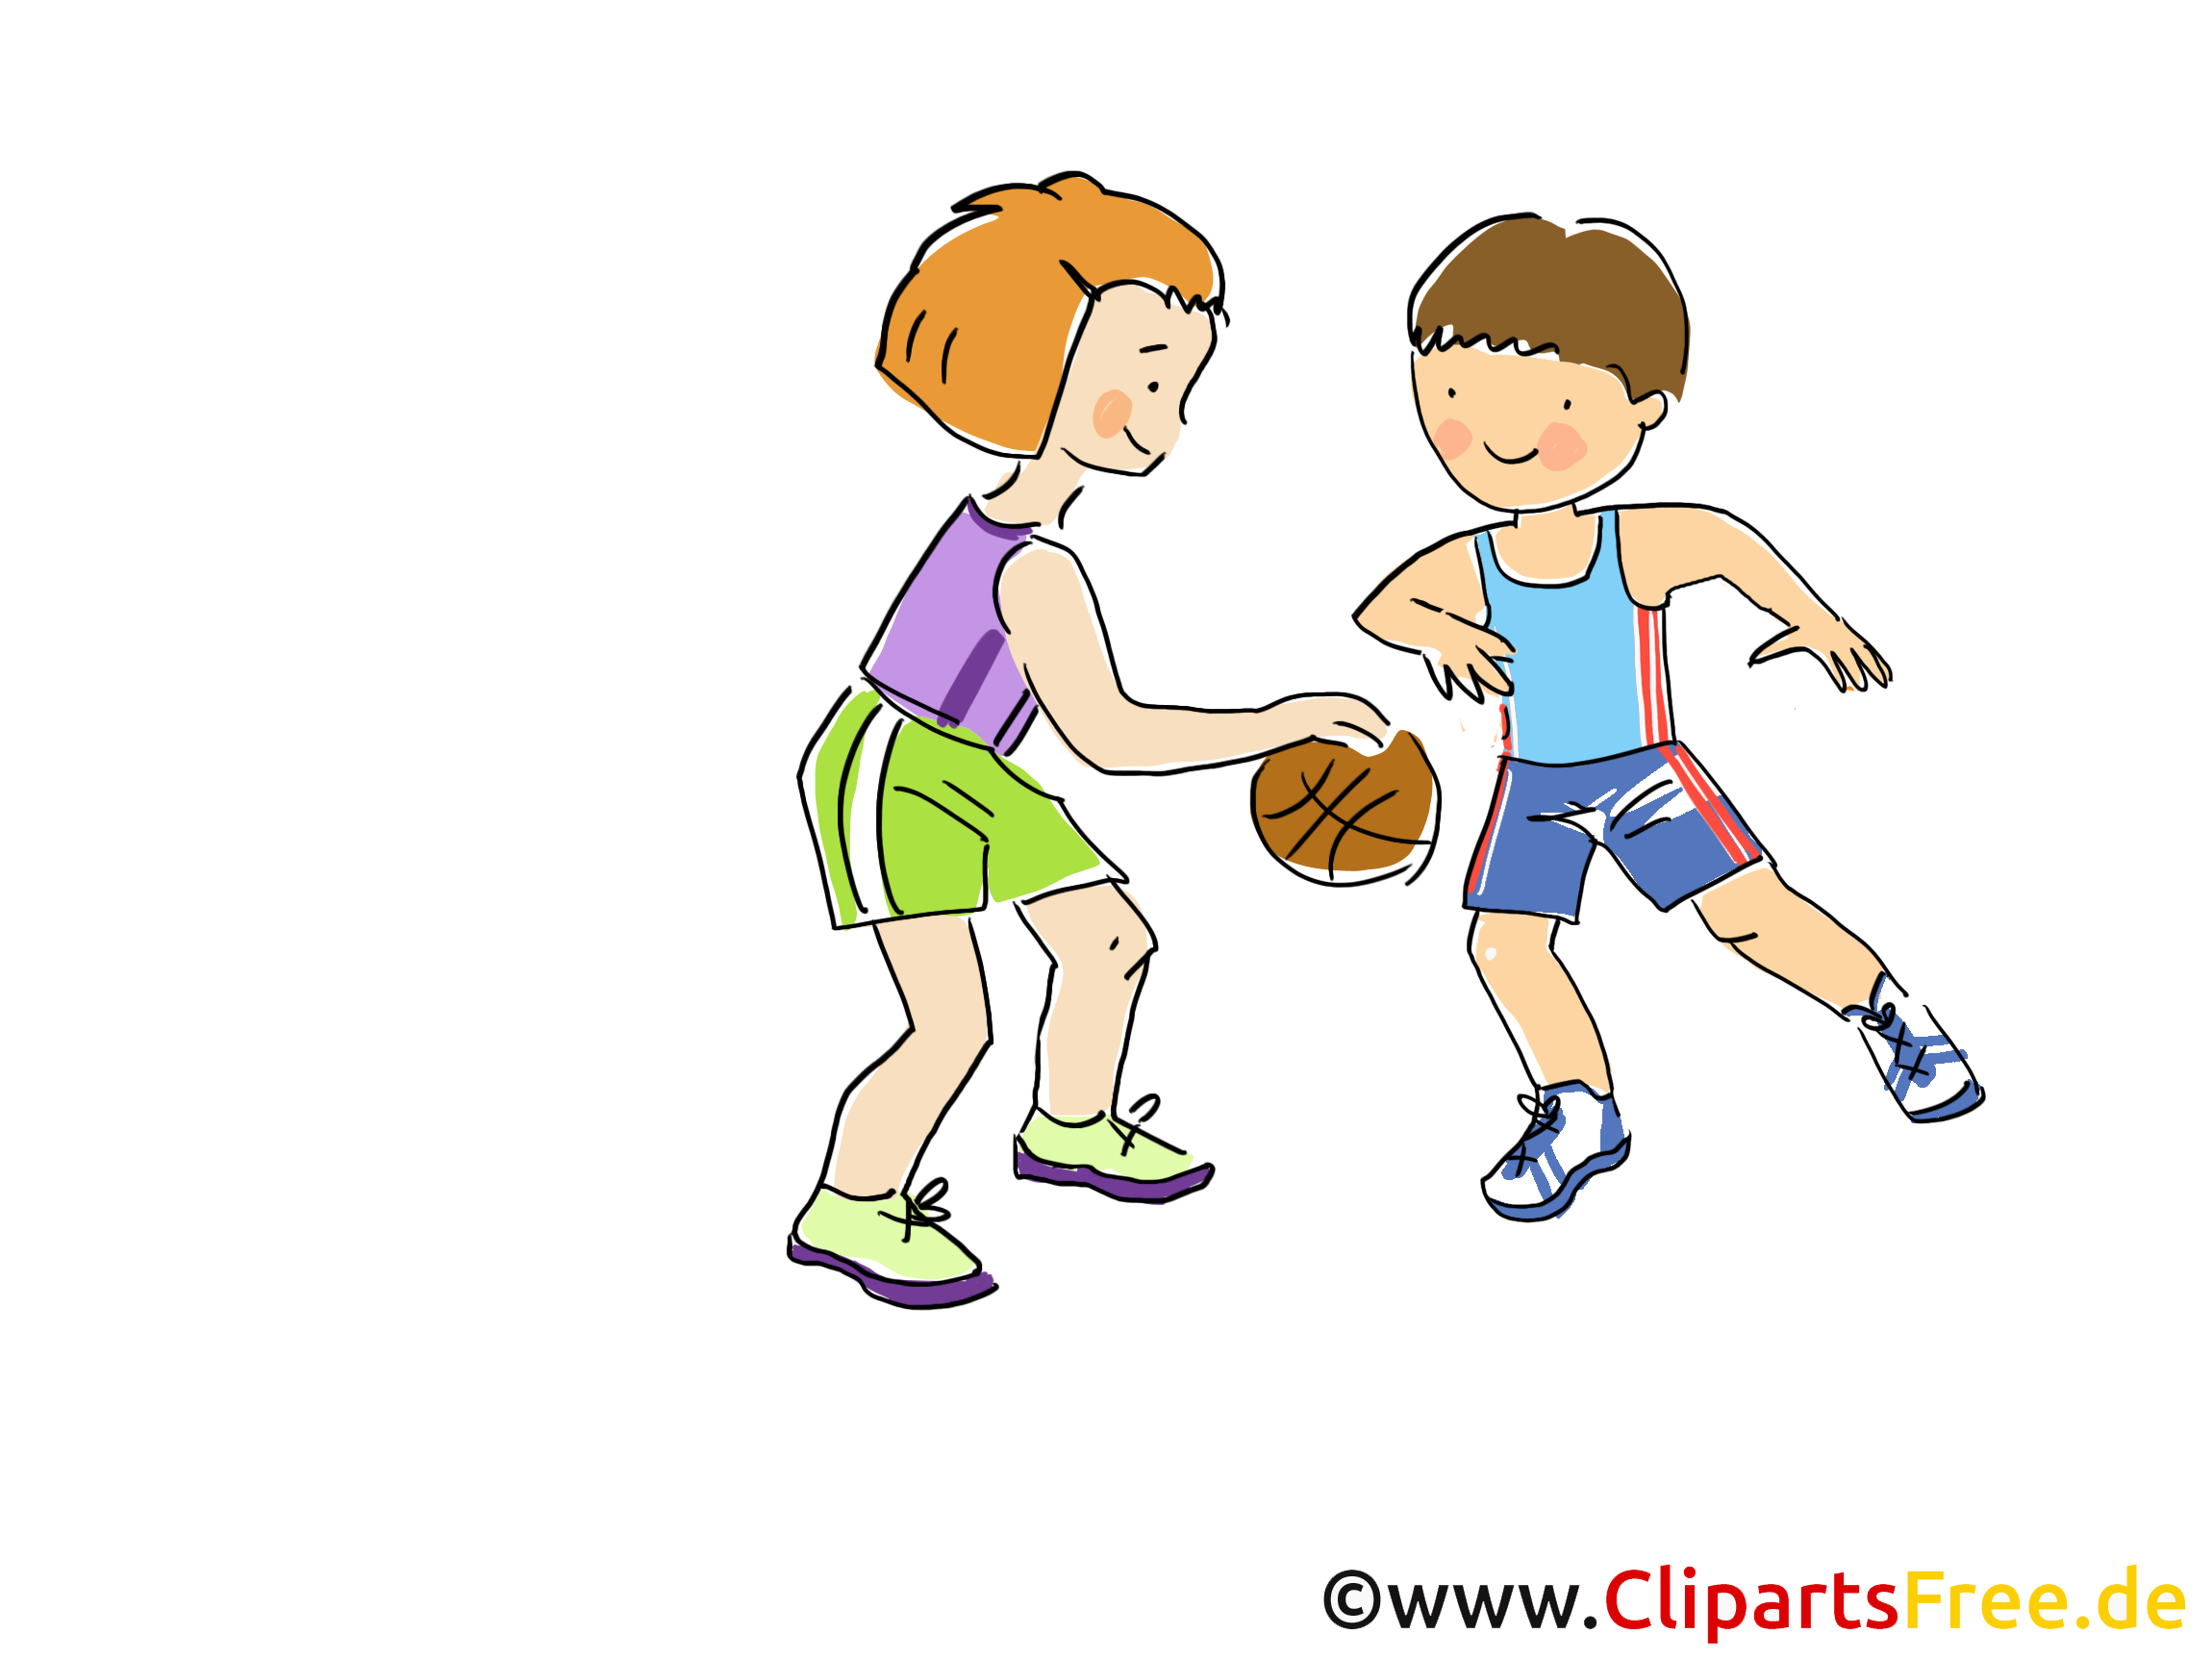 clipart sport und spiel - photo #47